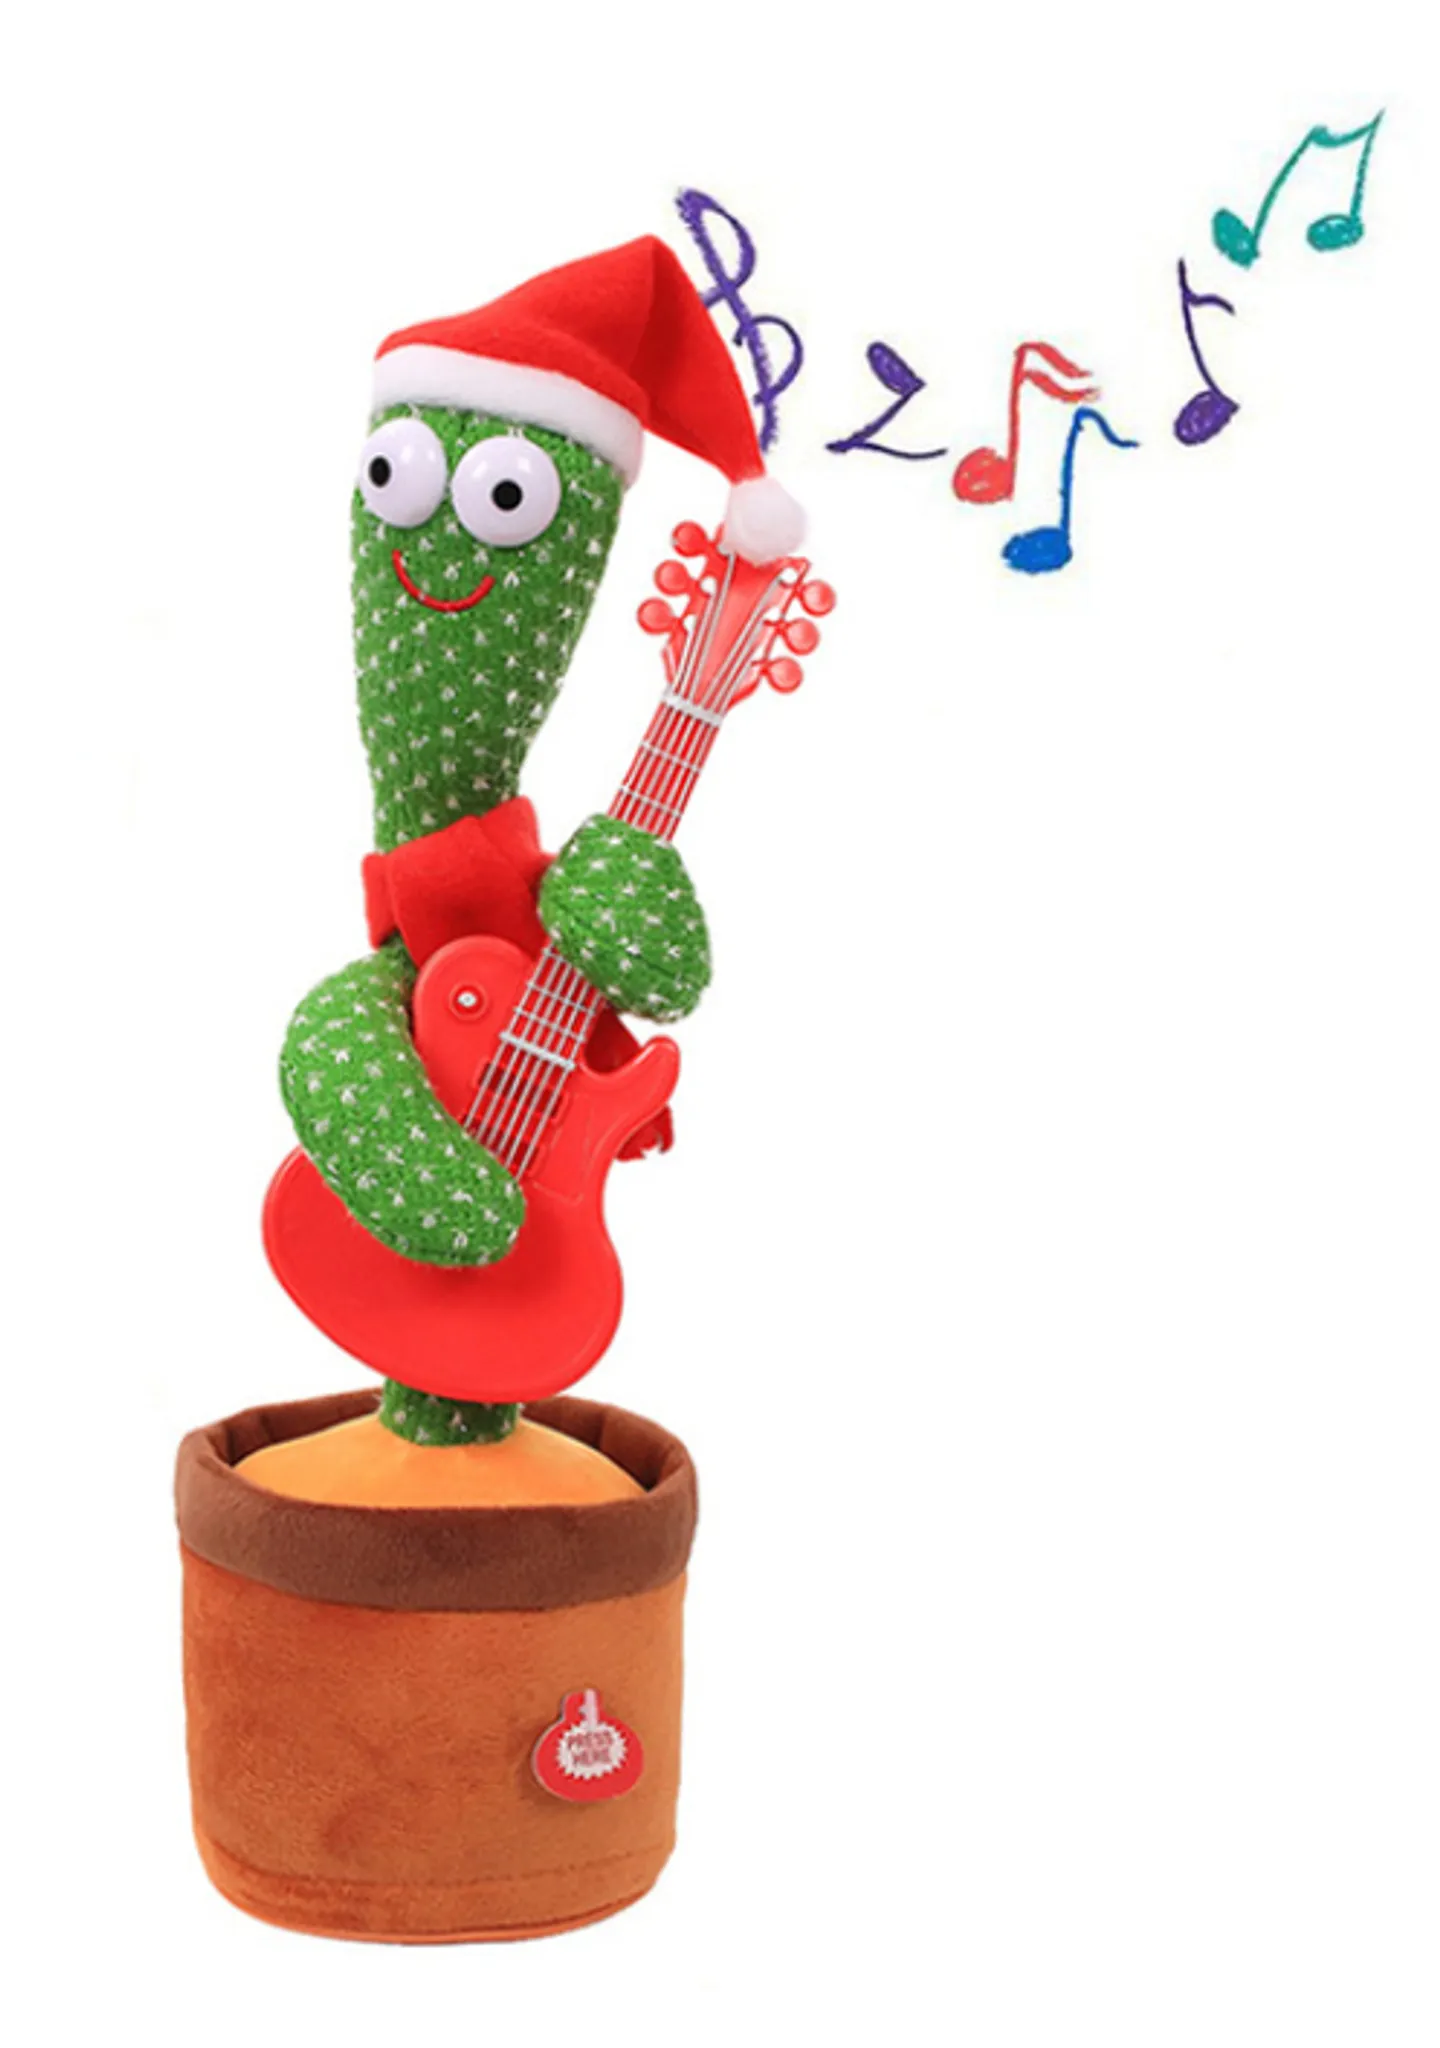 Tanzender Plüsch Kaktus mit Musik - Lustige Geschenkidee